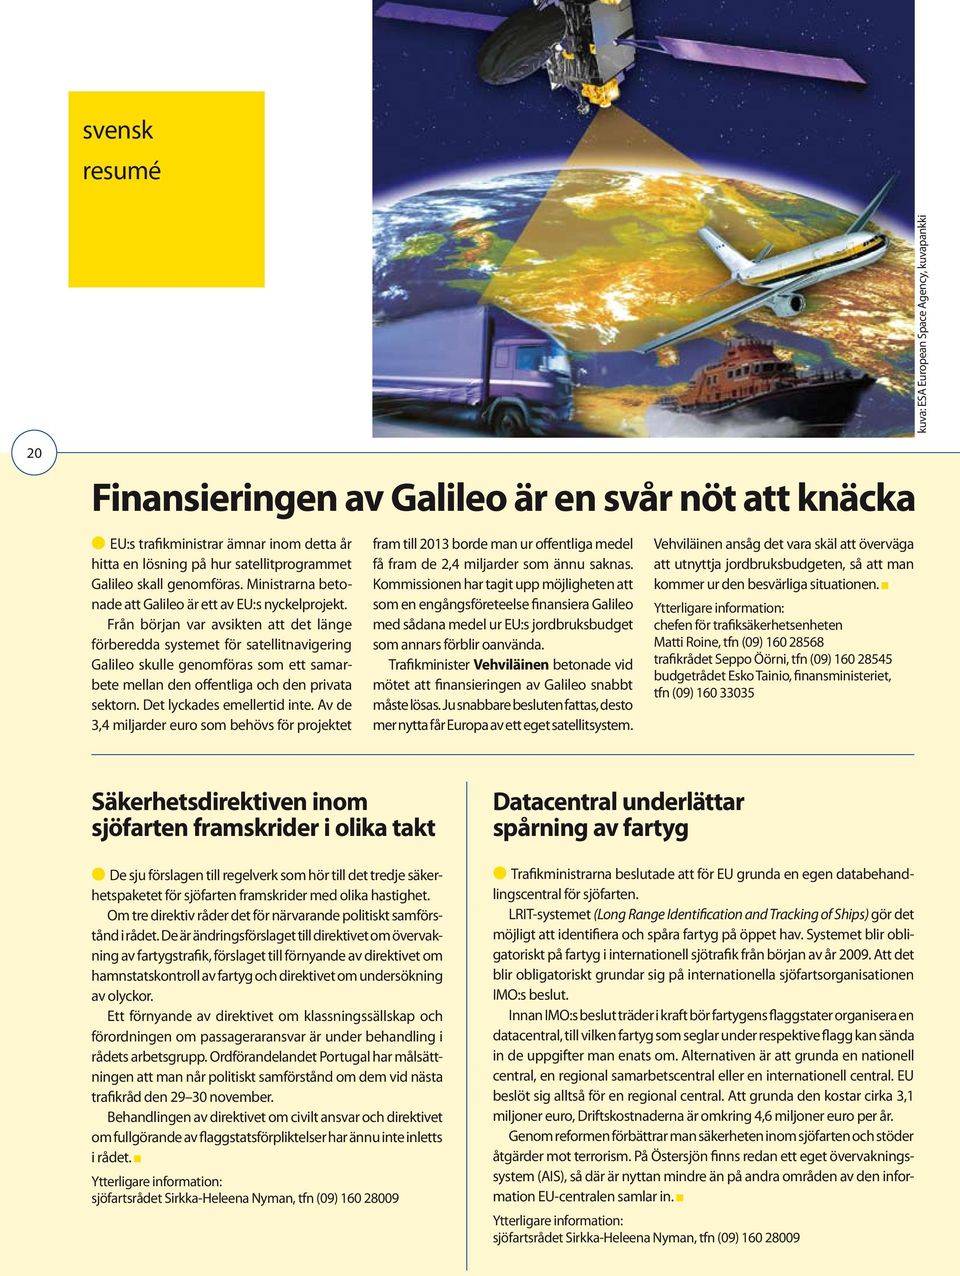 Från början var avsikten att det länge förberedda systemet för satellitnavigering Galileo skulle genomföras som ett samarbete mellan den offentliga och den privata sektorn.